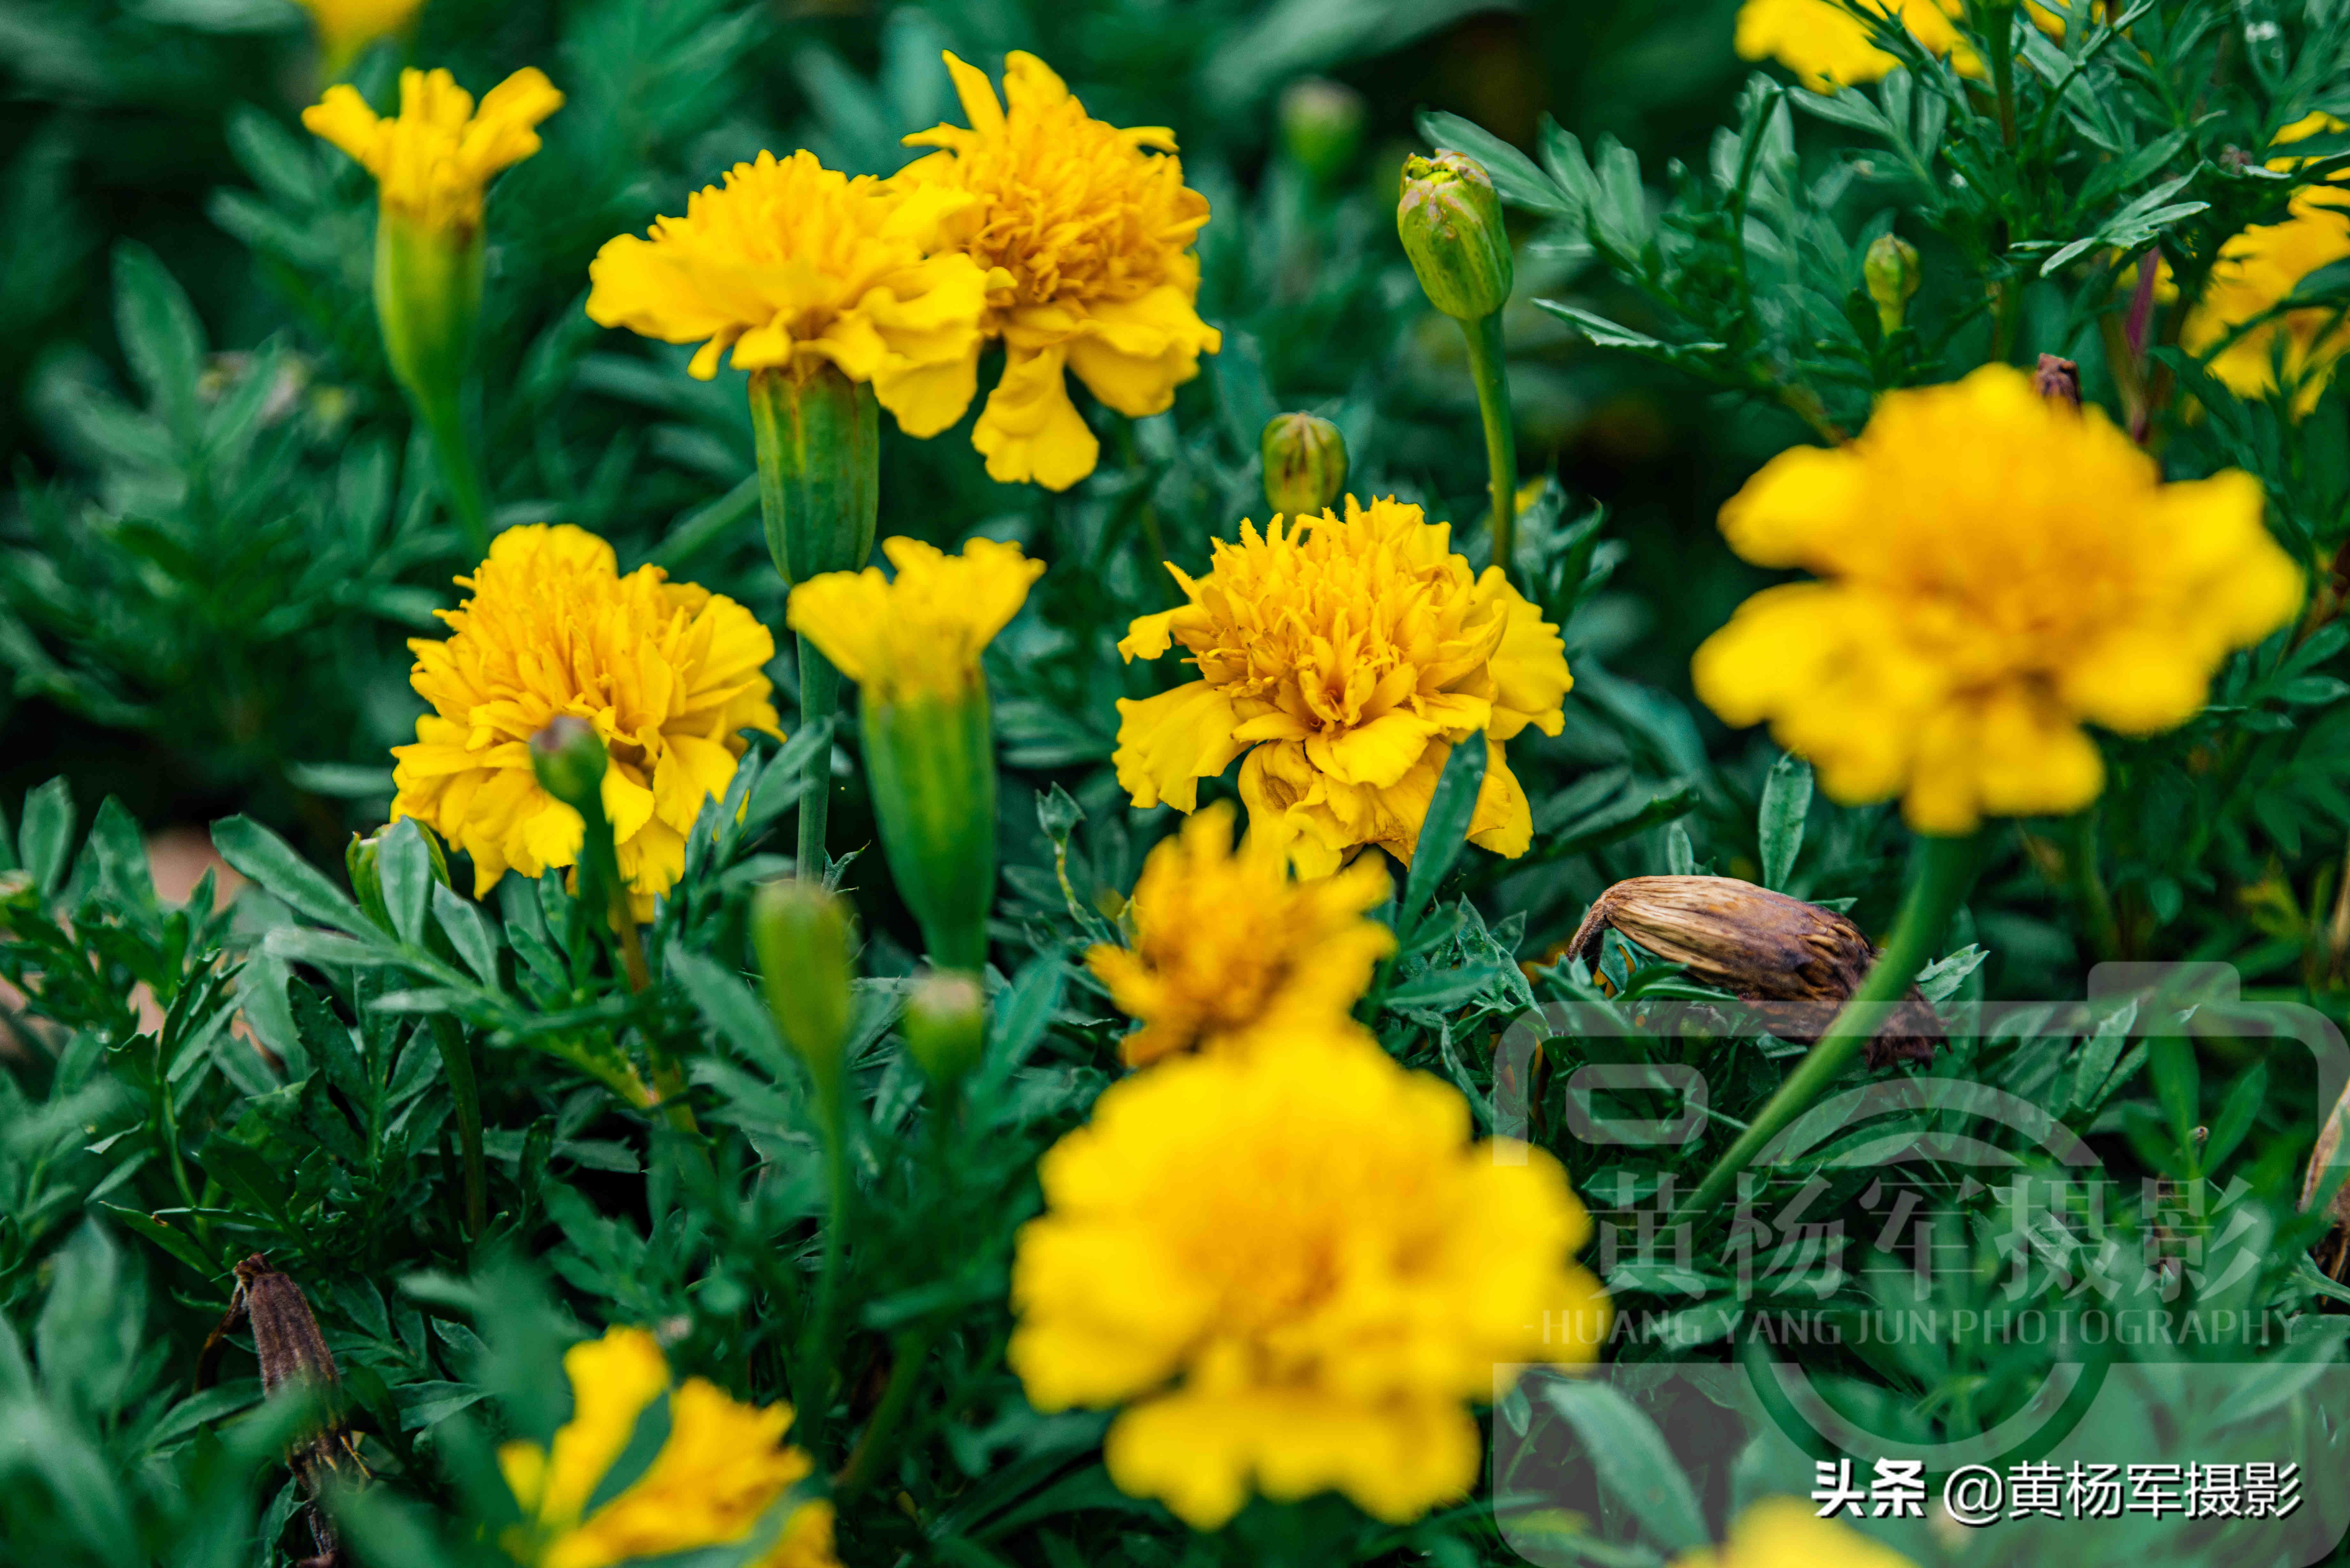 八月万寿菊花盛开的芬芳 金黄色的花儿美艳动人 靓丽含香的菊科 资讯咖